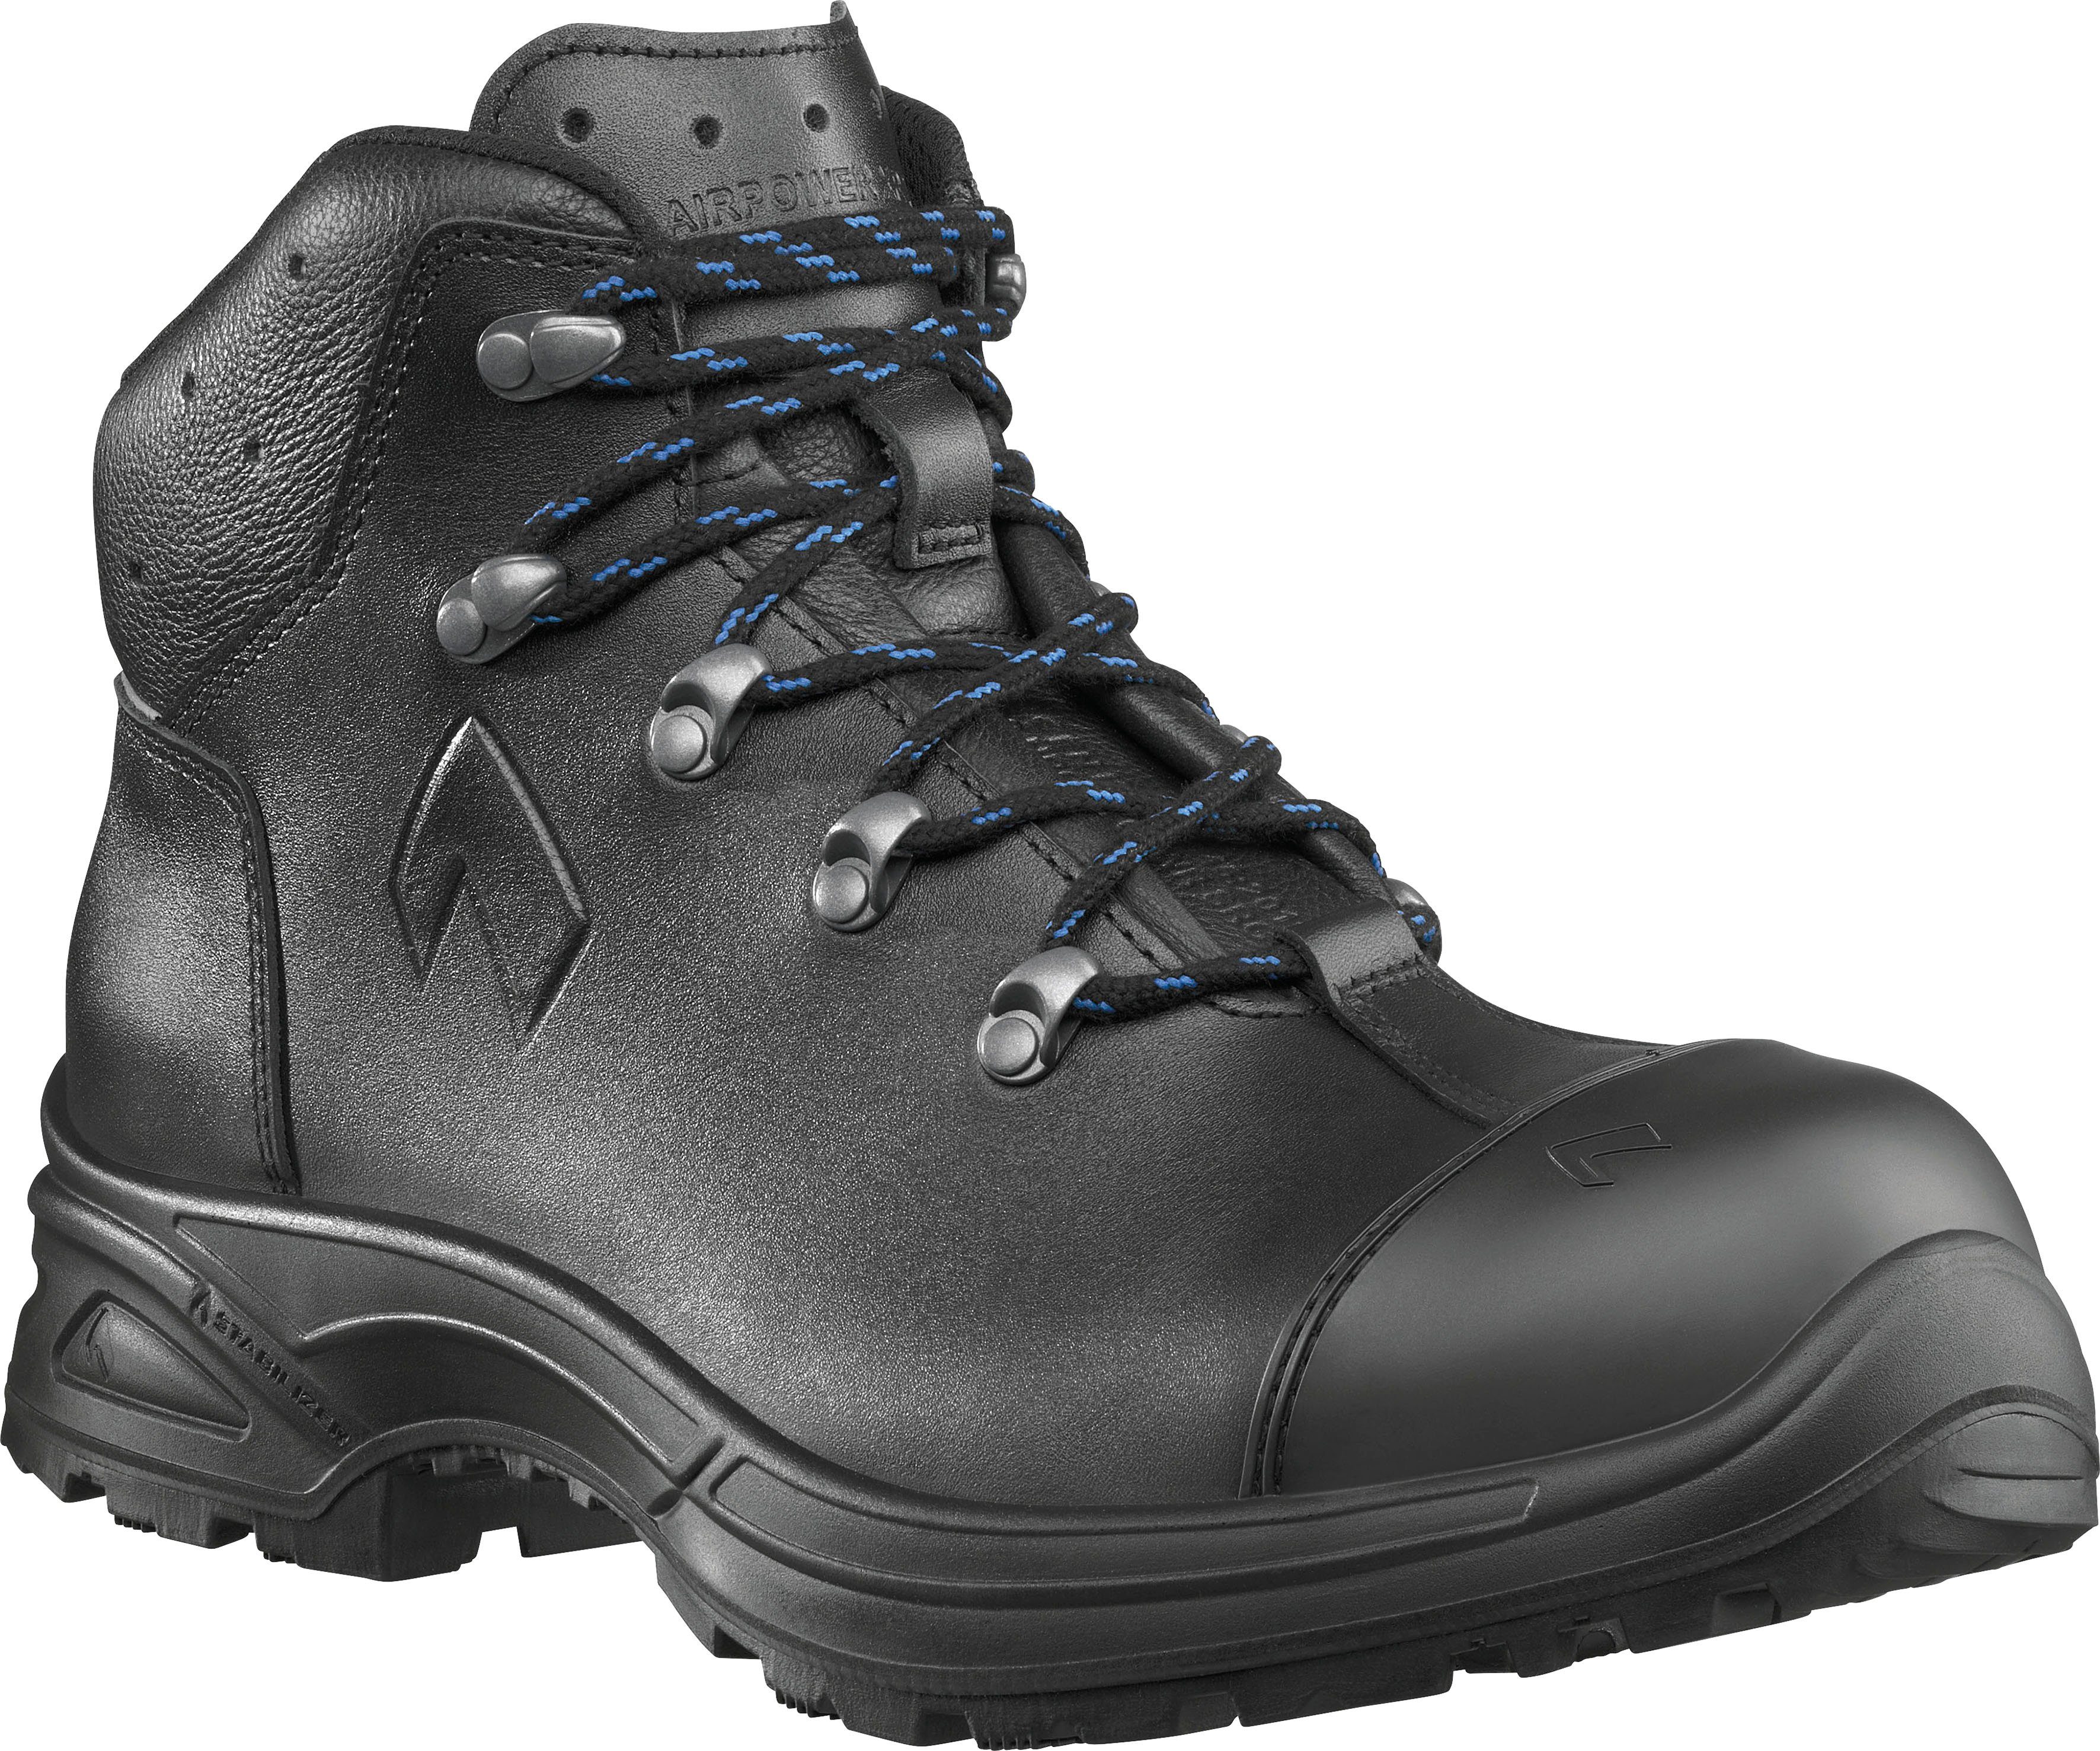 Schuhe Sicherheitsschuhe haix Airpower XR26 Sicherheitsstiefel für orthopädische Einlagen zugelassen, Sicherheitsklasse S3